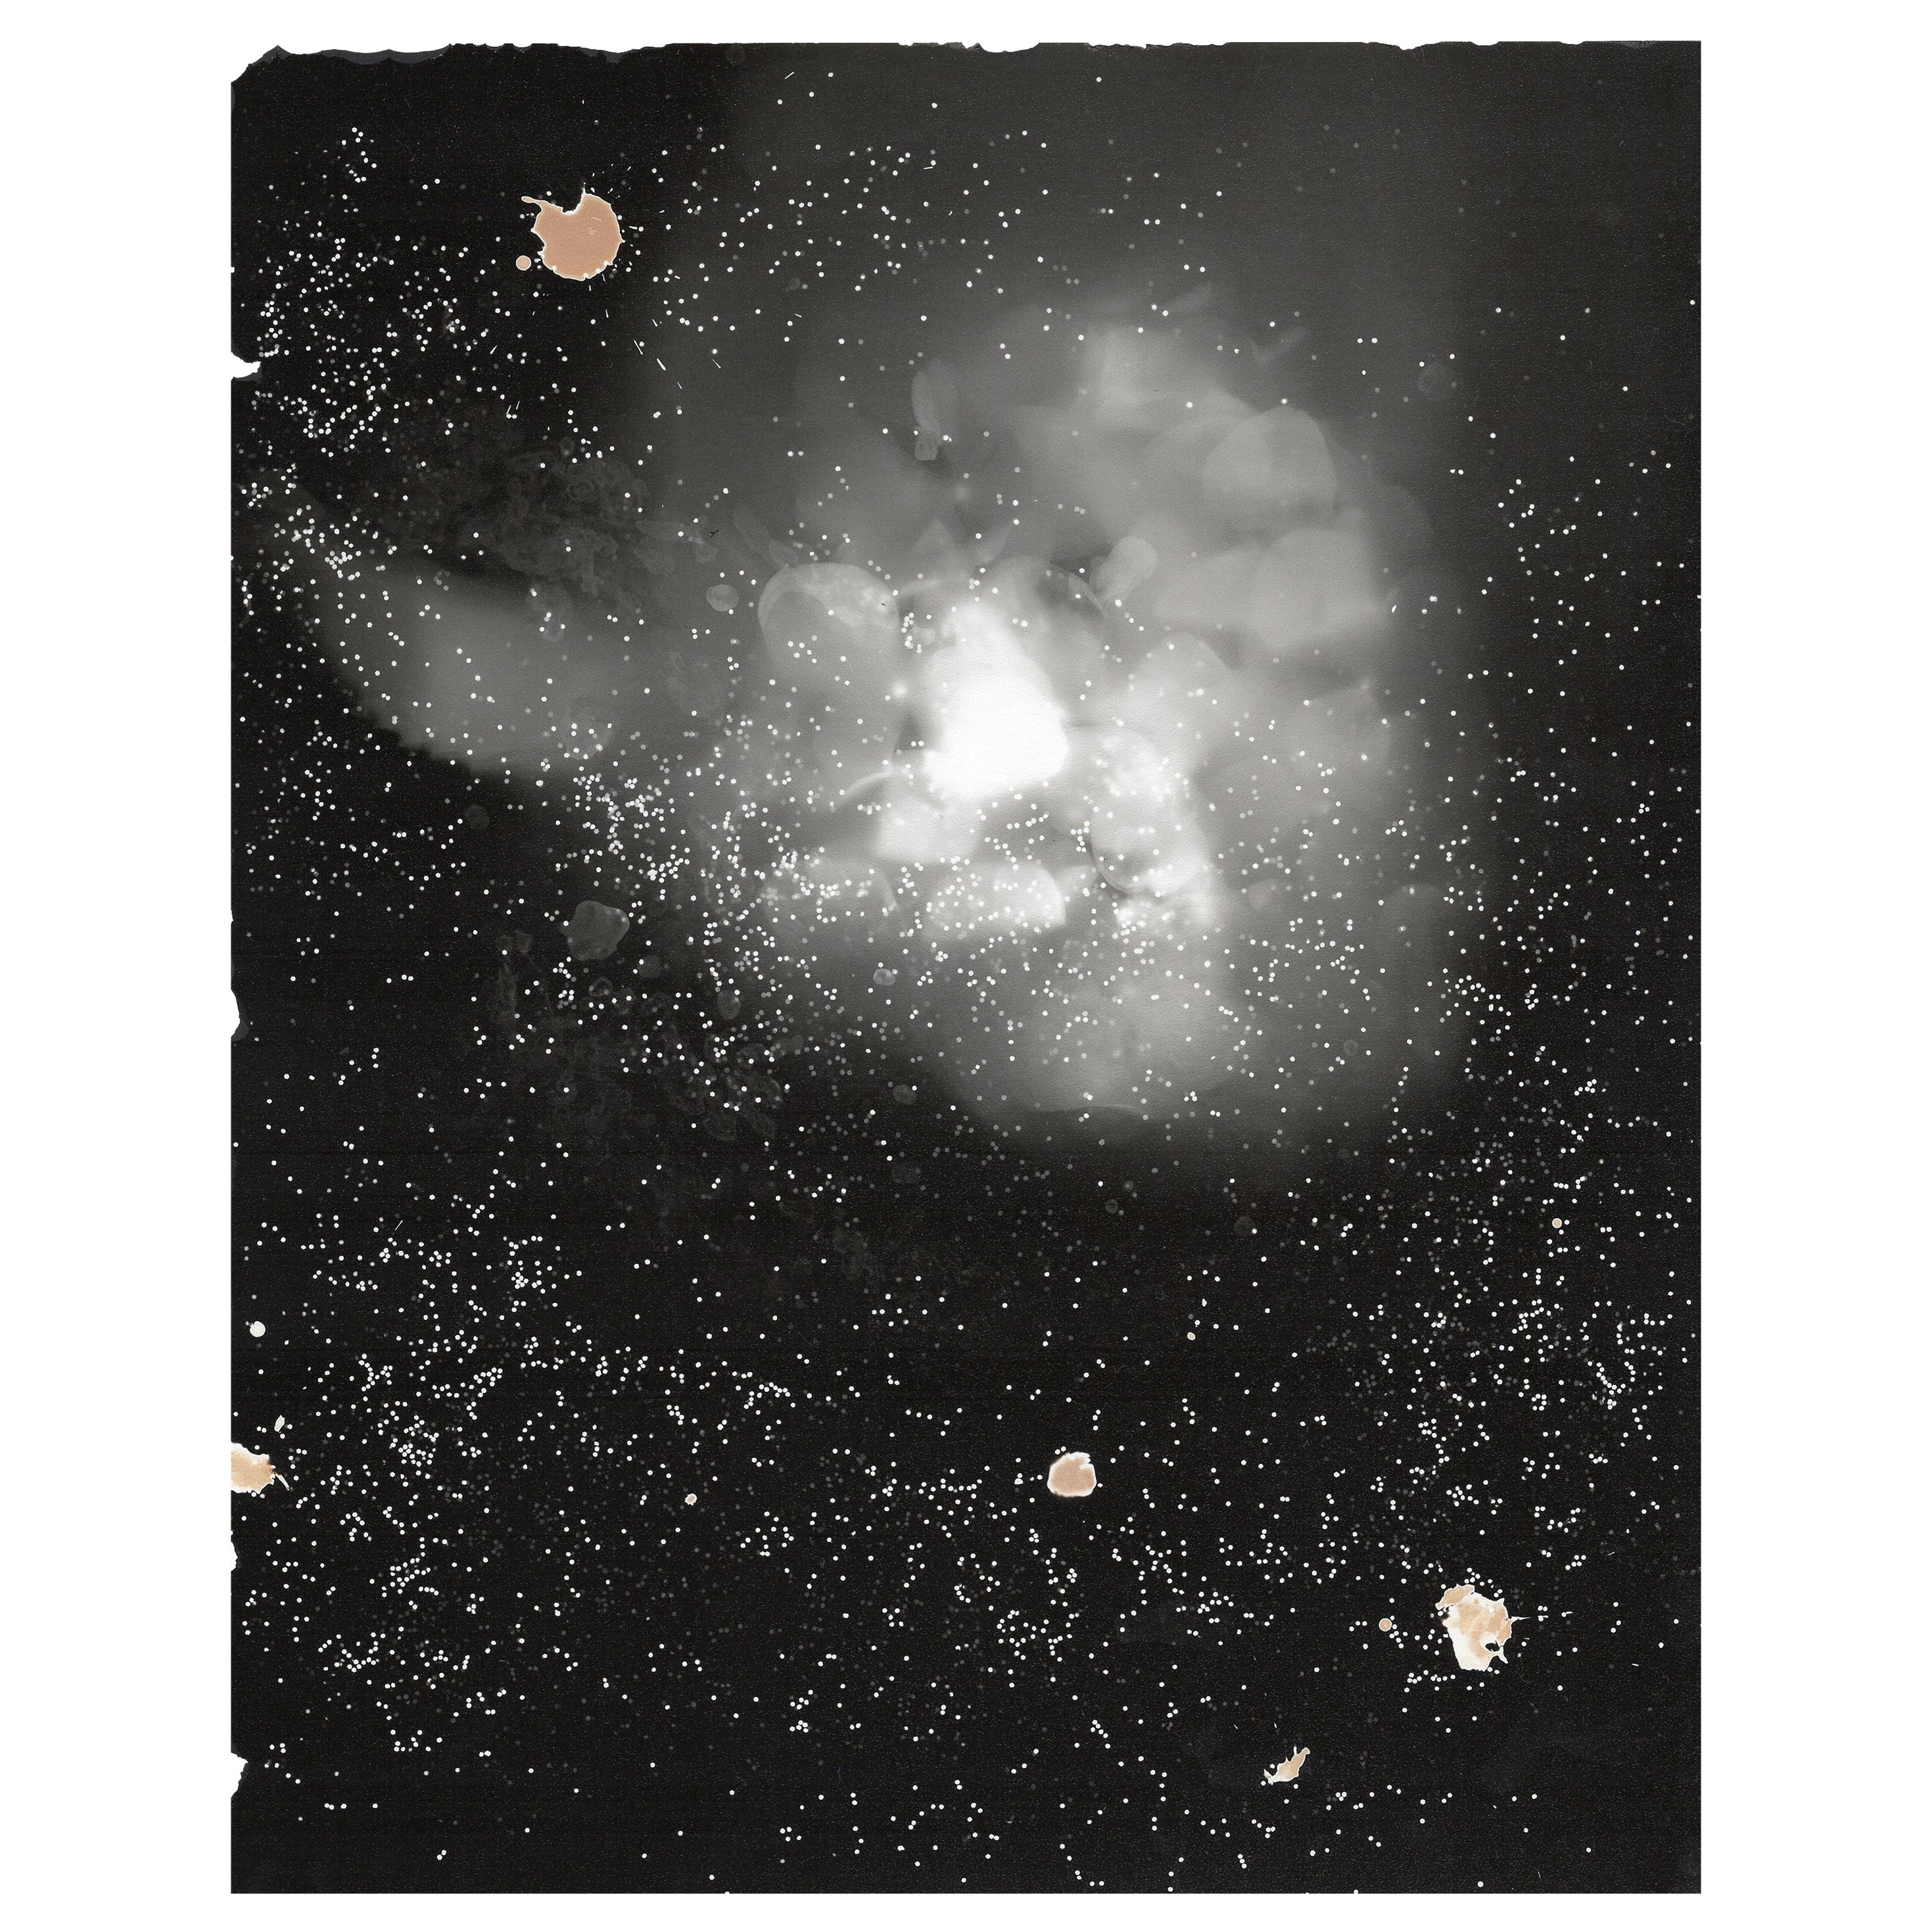 Kimberly Schneider Photography Black and White Photograph – einzigartige abstrakte schwarz-weiße zeitgenössische Gelatinesilberfotografie von Lullaby